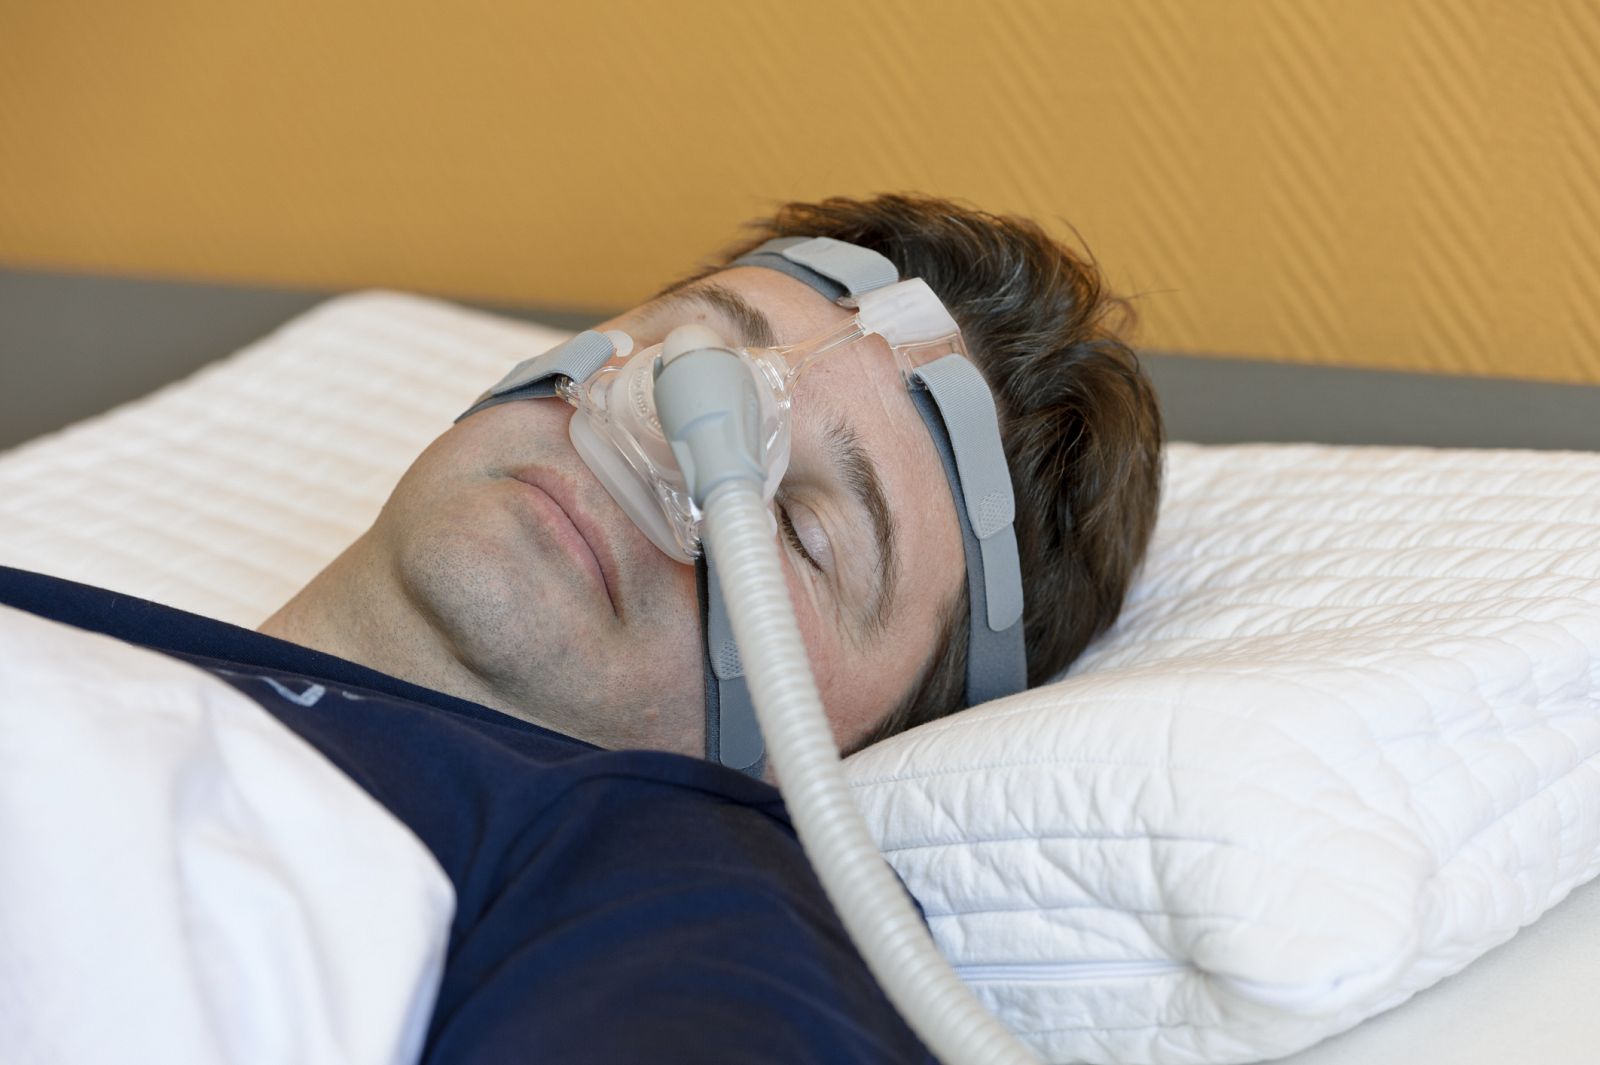 Un afectado por la apnea del sueño con oxígeno para dormir.